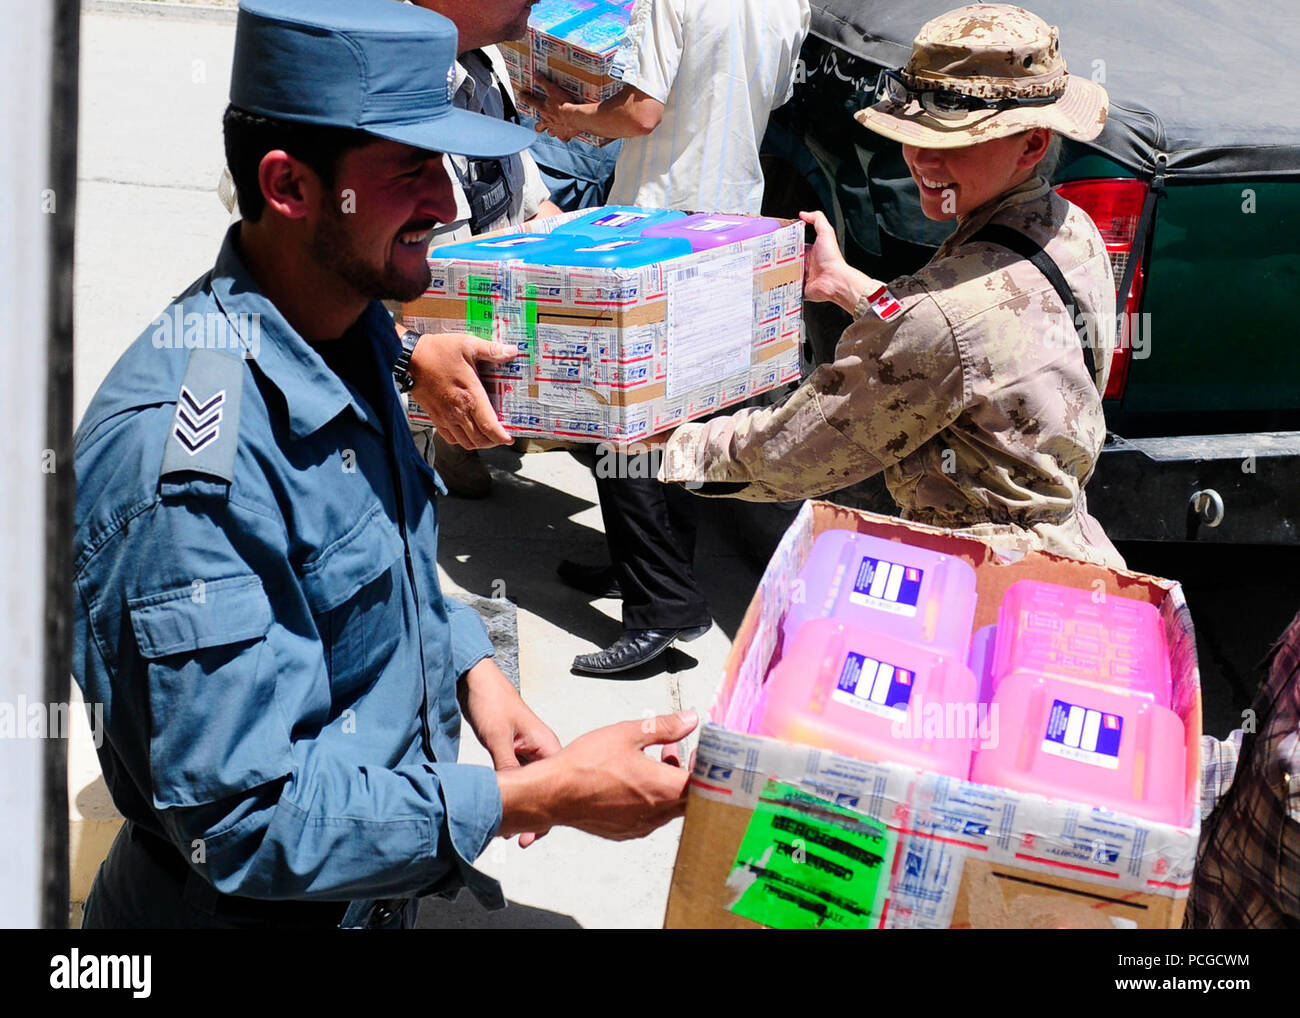 KABUL, Afganistán - Policía Nacional Afgana del orden civil y las fuerzas de la Coalición cargar cajas de suministros escolares en un camión para distribuirlos a una escuela cercana. Comando ANCOP Sgt. Gral. Abdul Wihad encabeza la donación de material escolar que tiene lugar una vez al mes Foto de stock